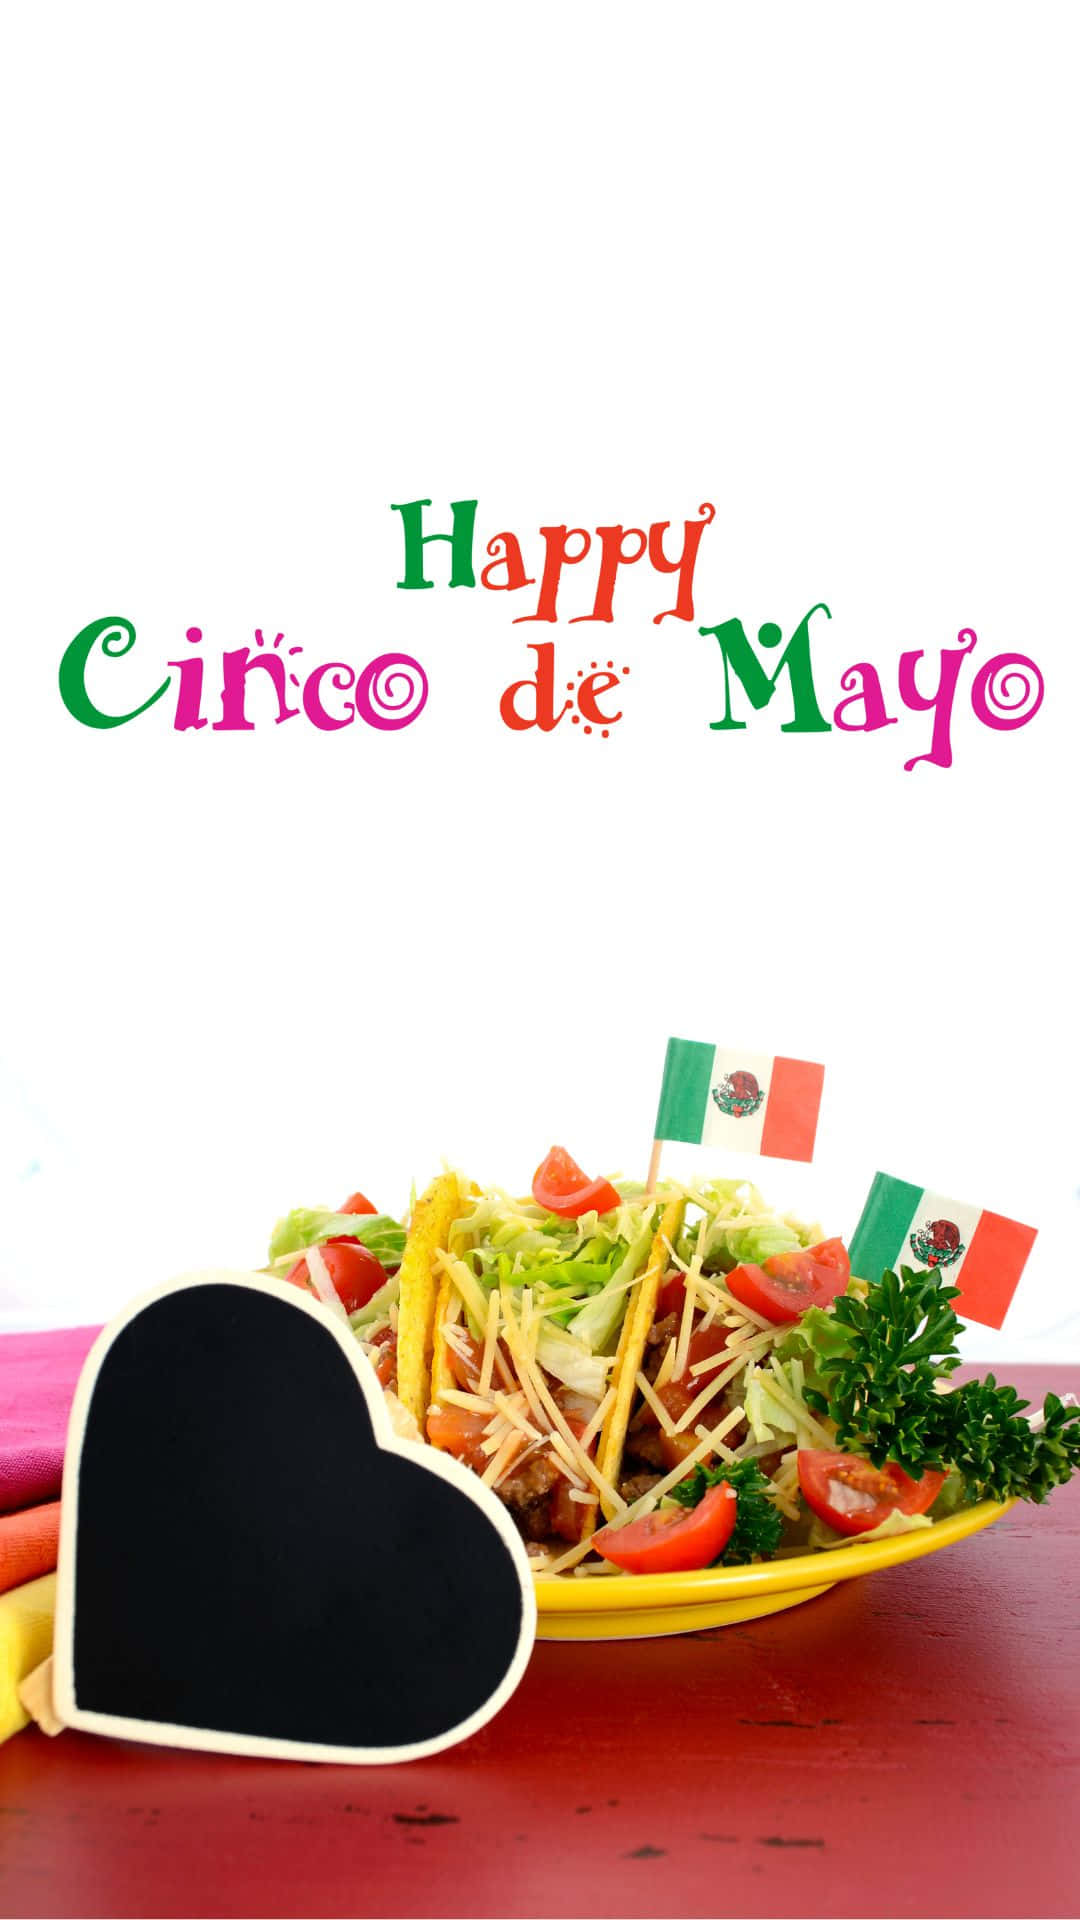 Happy Cinco De Mayo - Hd Wallpapers Wallpaper